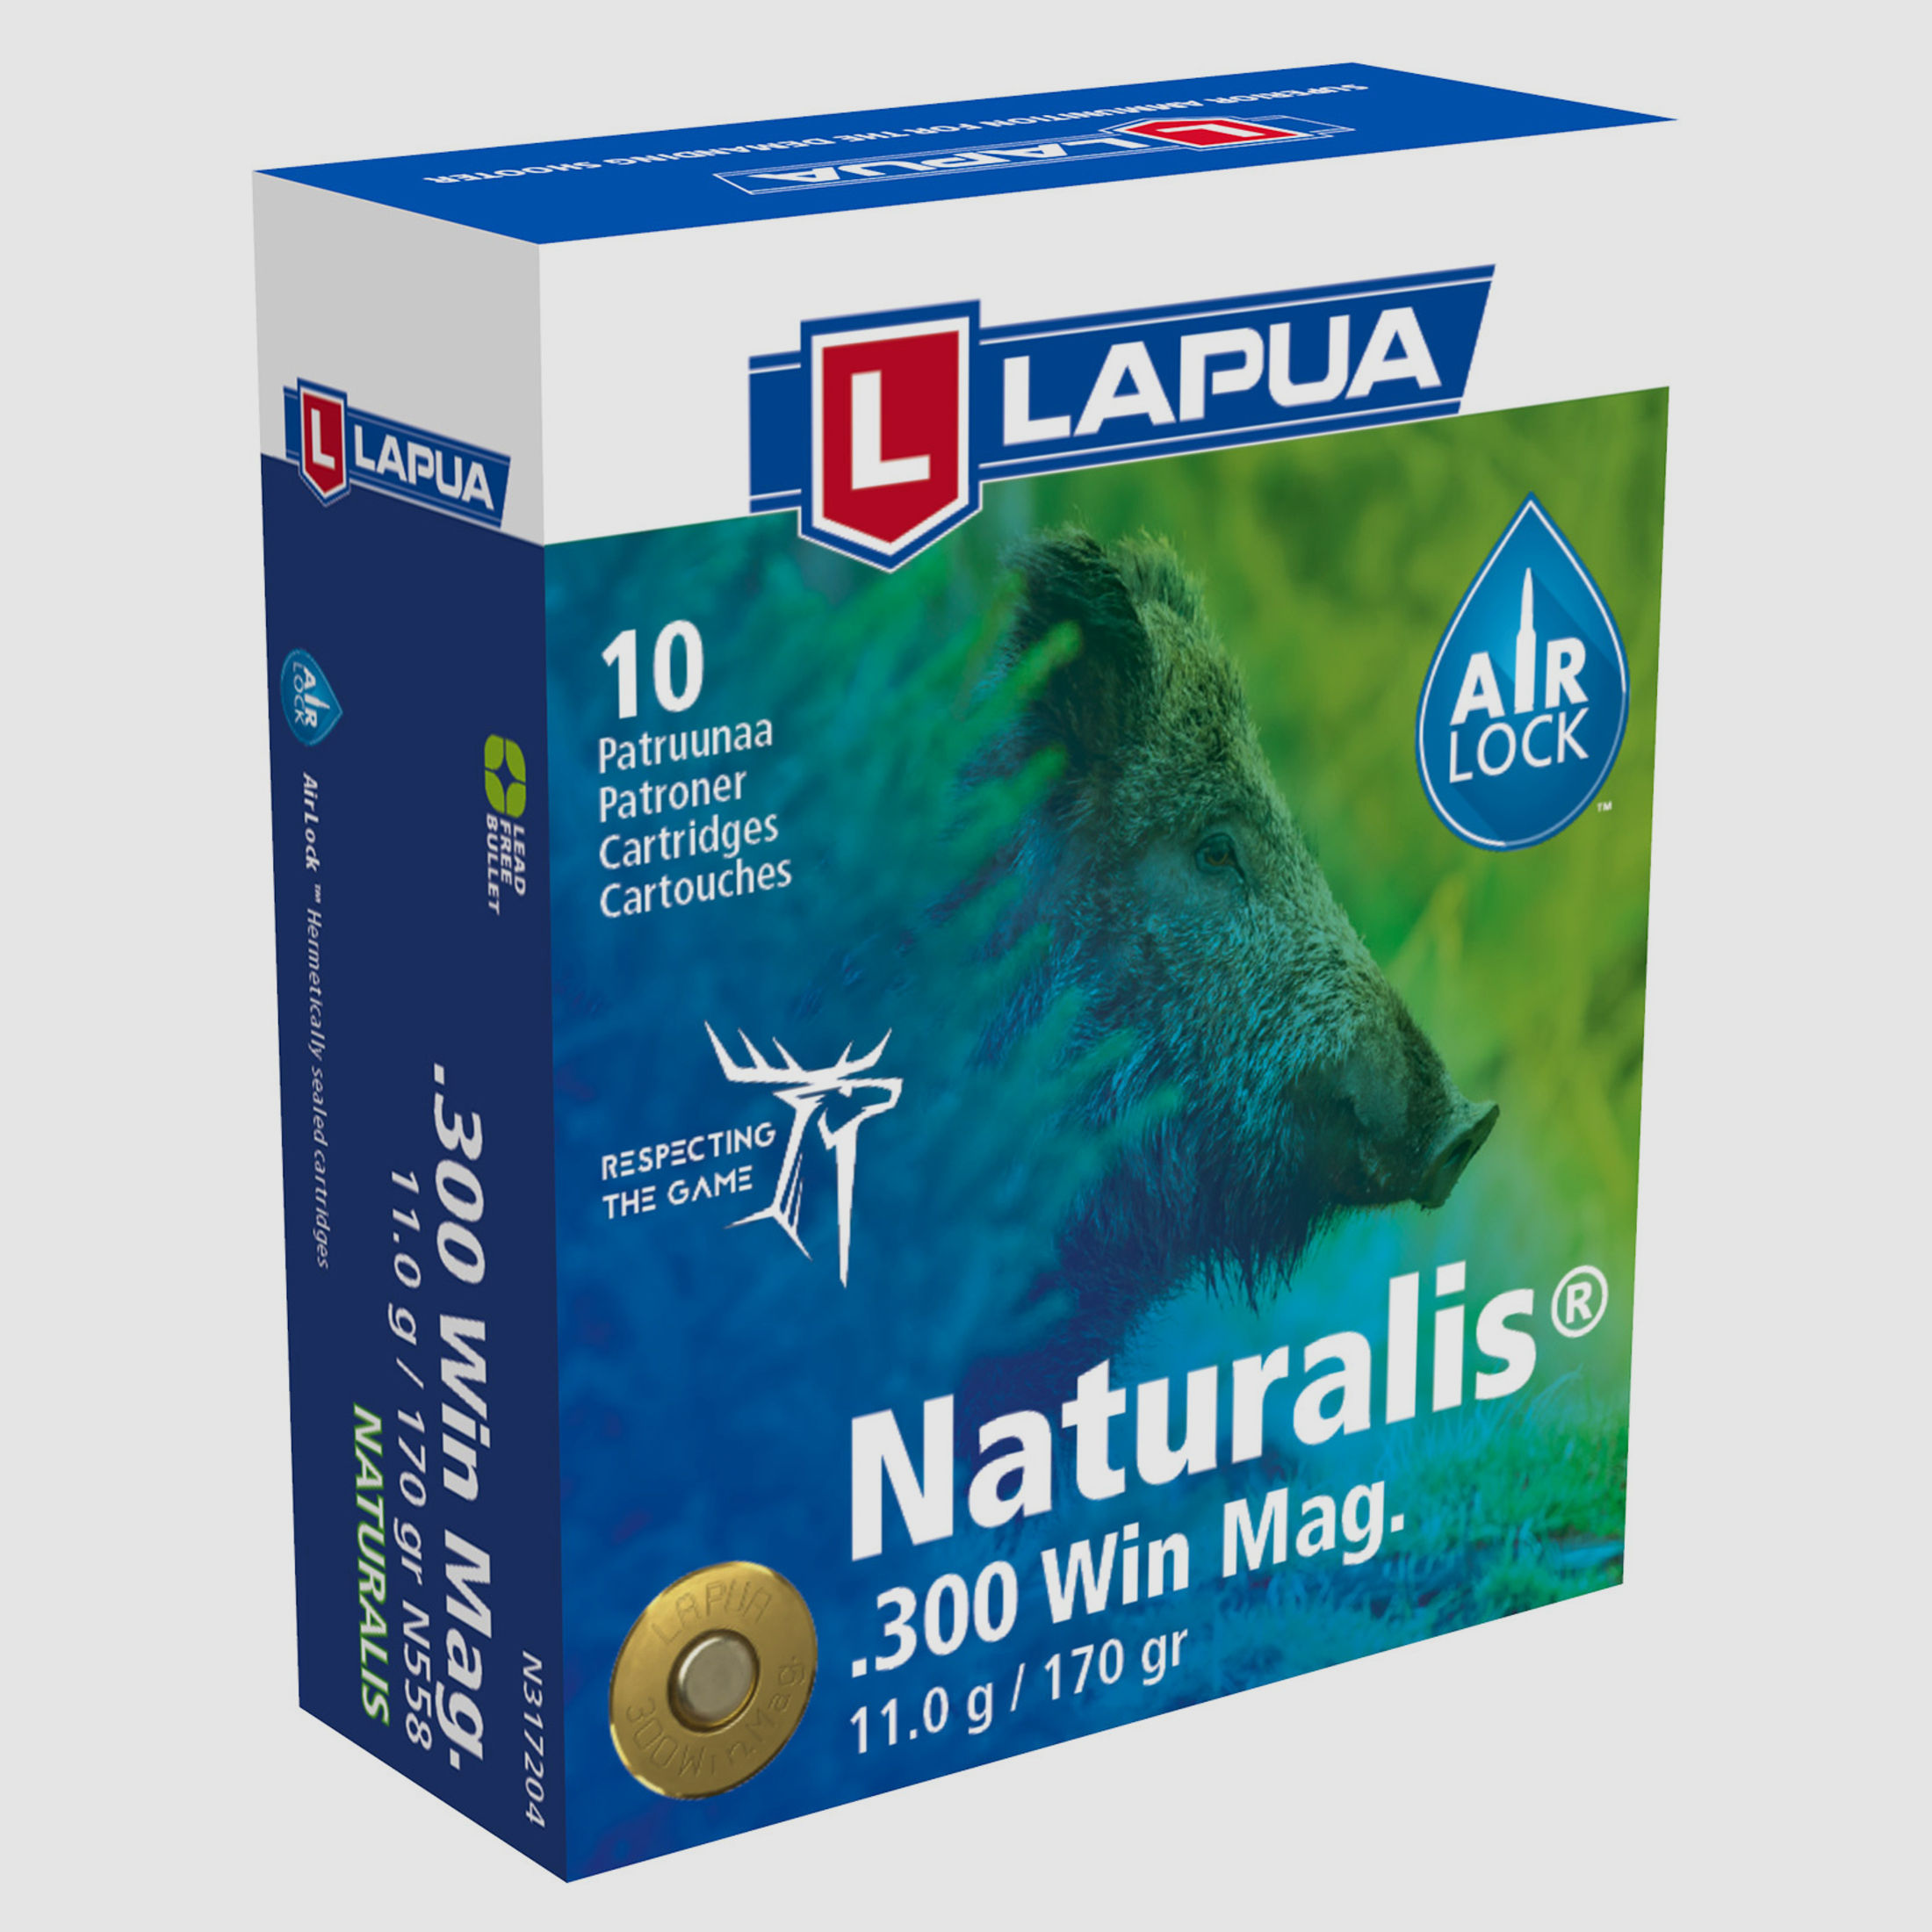 LAPUA .300 Win Mag Naturalis 11g / 170grs